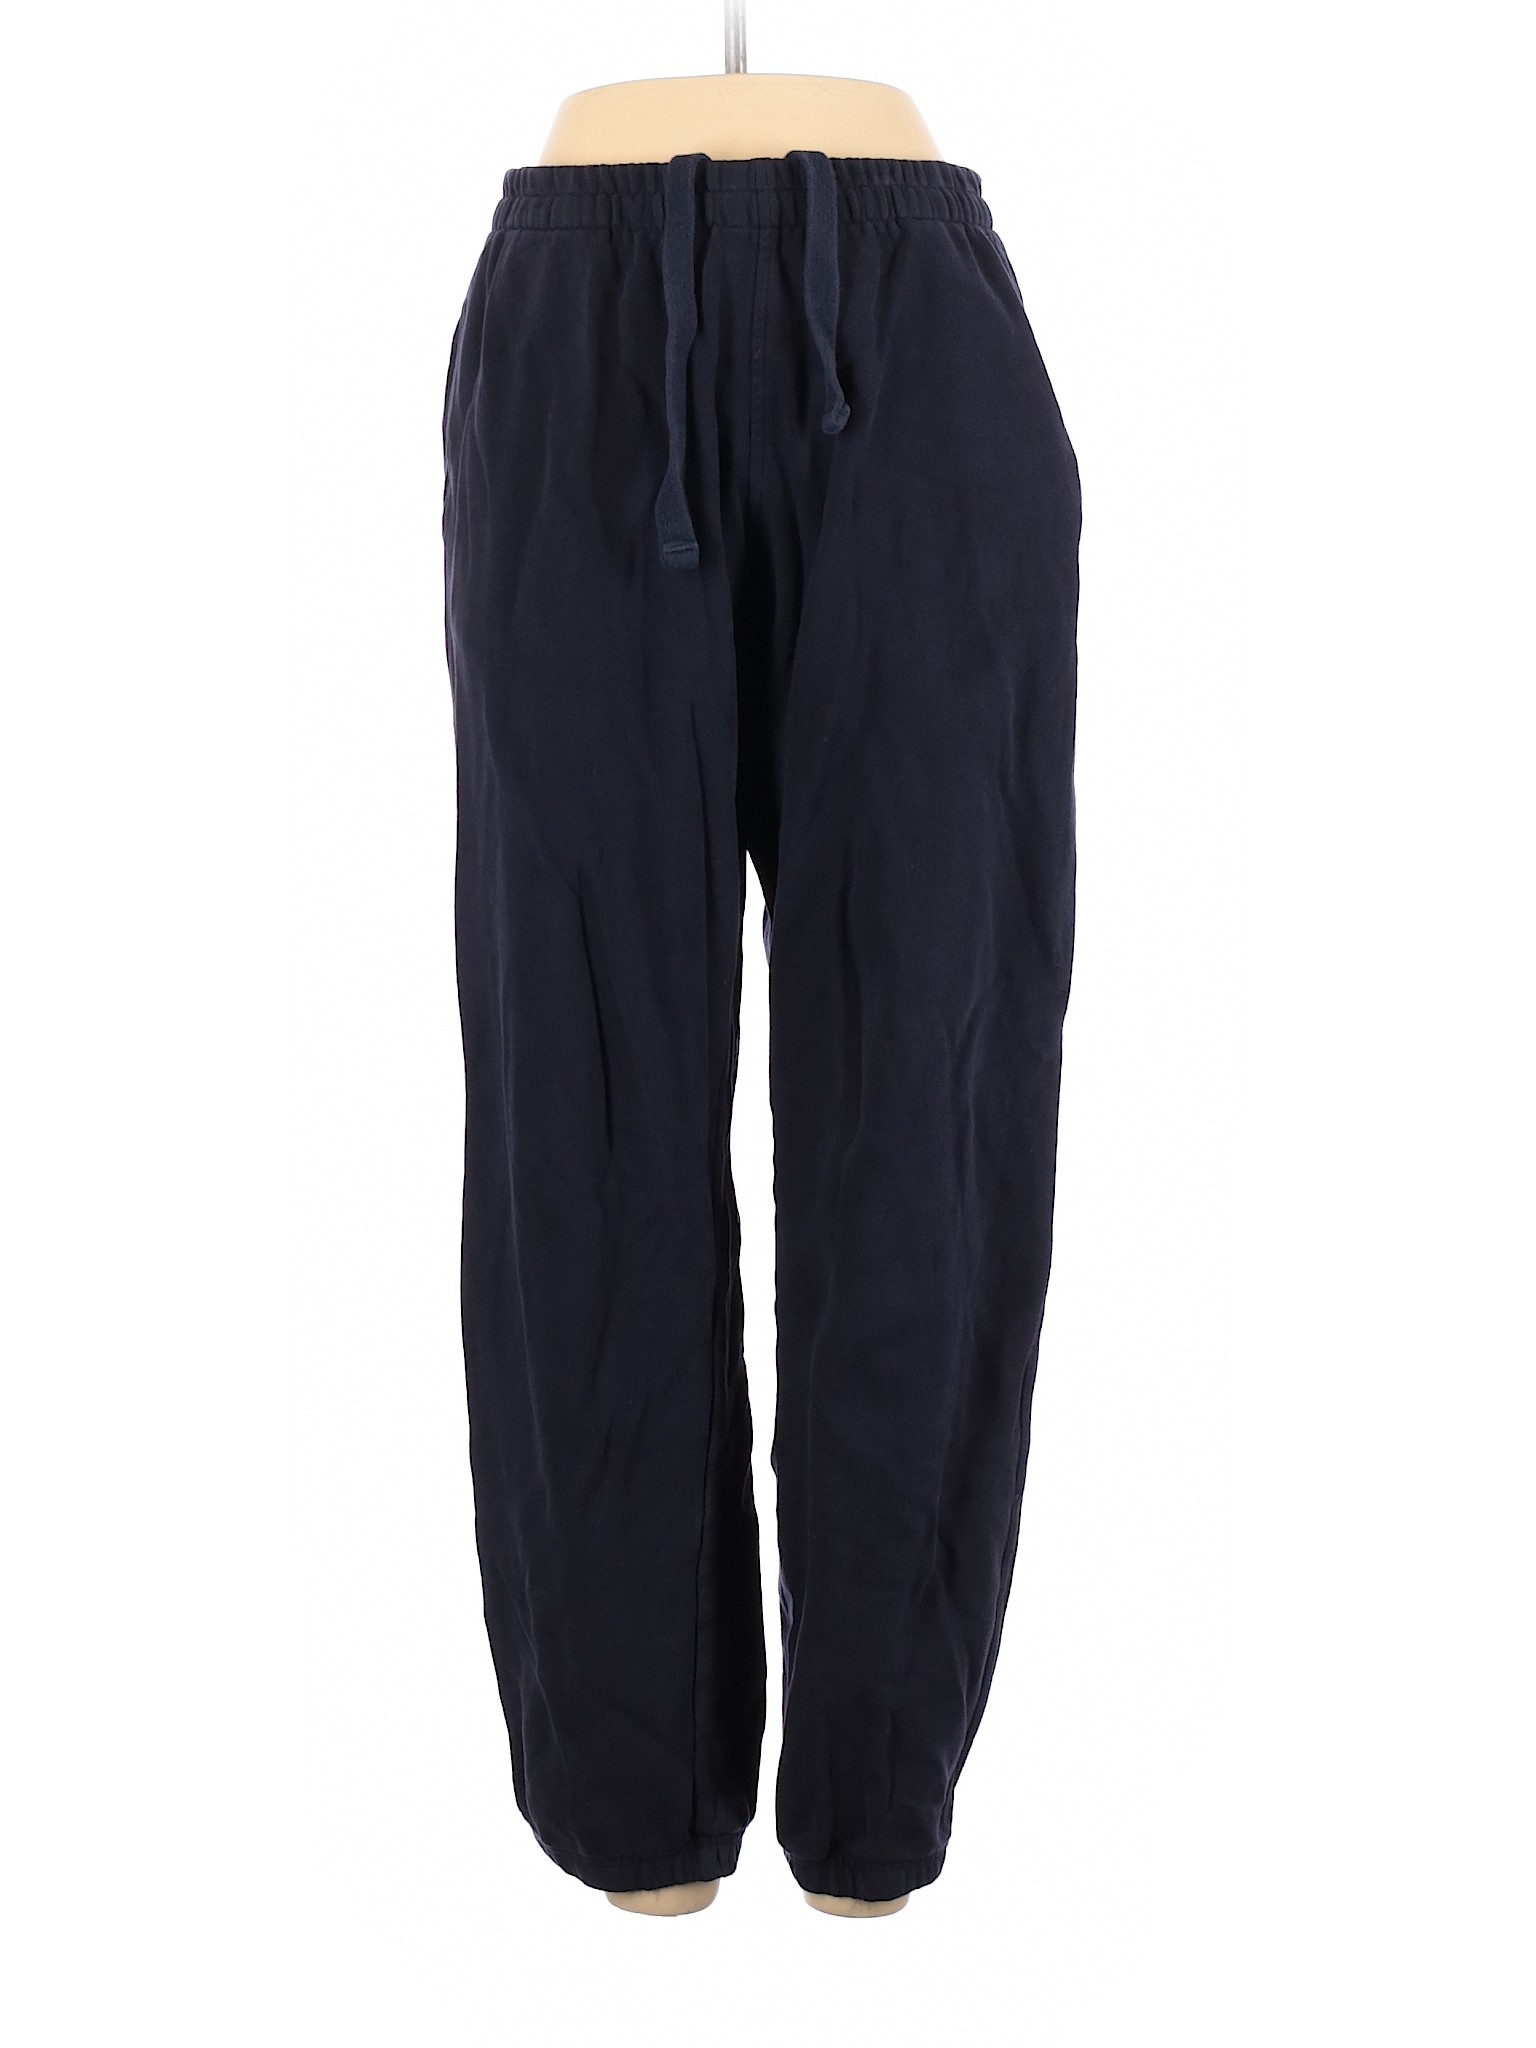 Fila Women Blue Sweatpants S | eBay